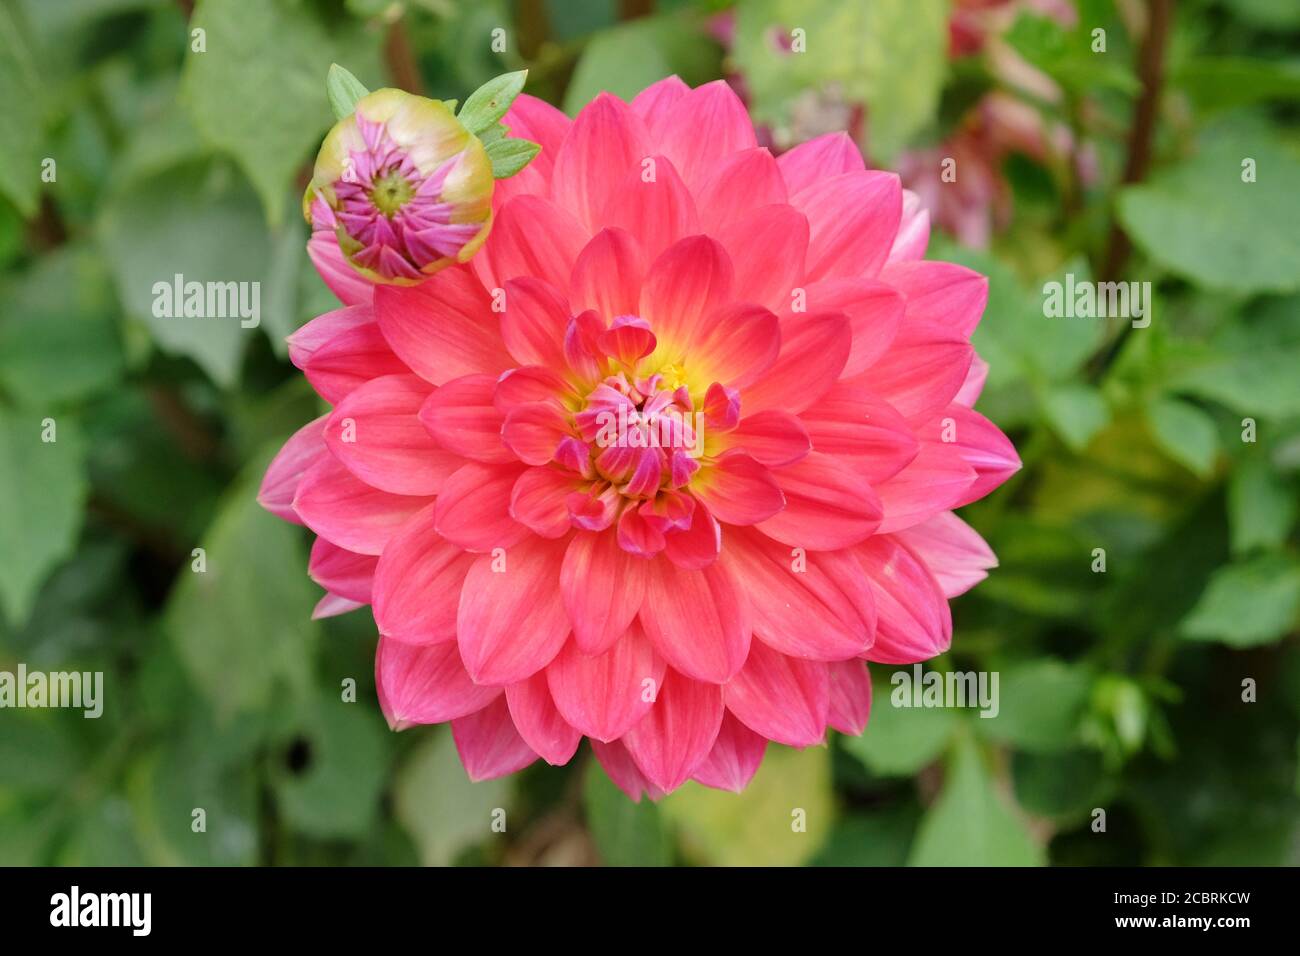 Pink waterlily 'Kilburn rose' dahlias in bloom Stock Photo